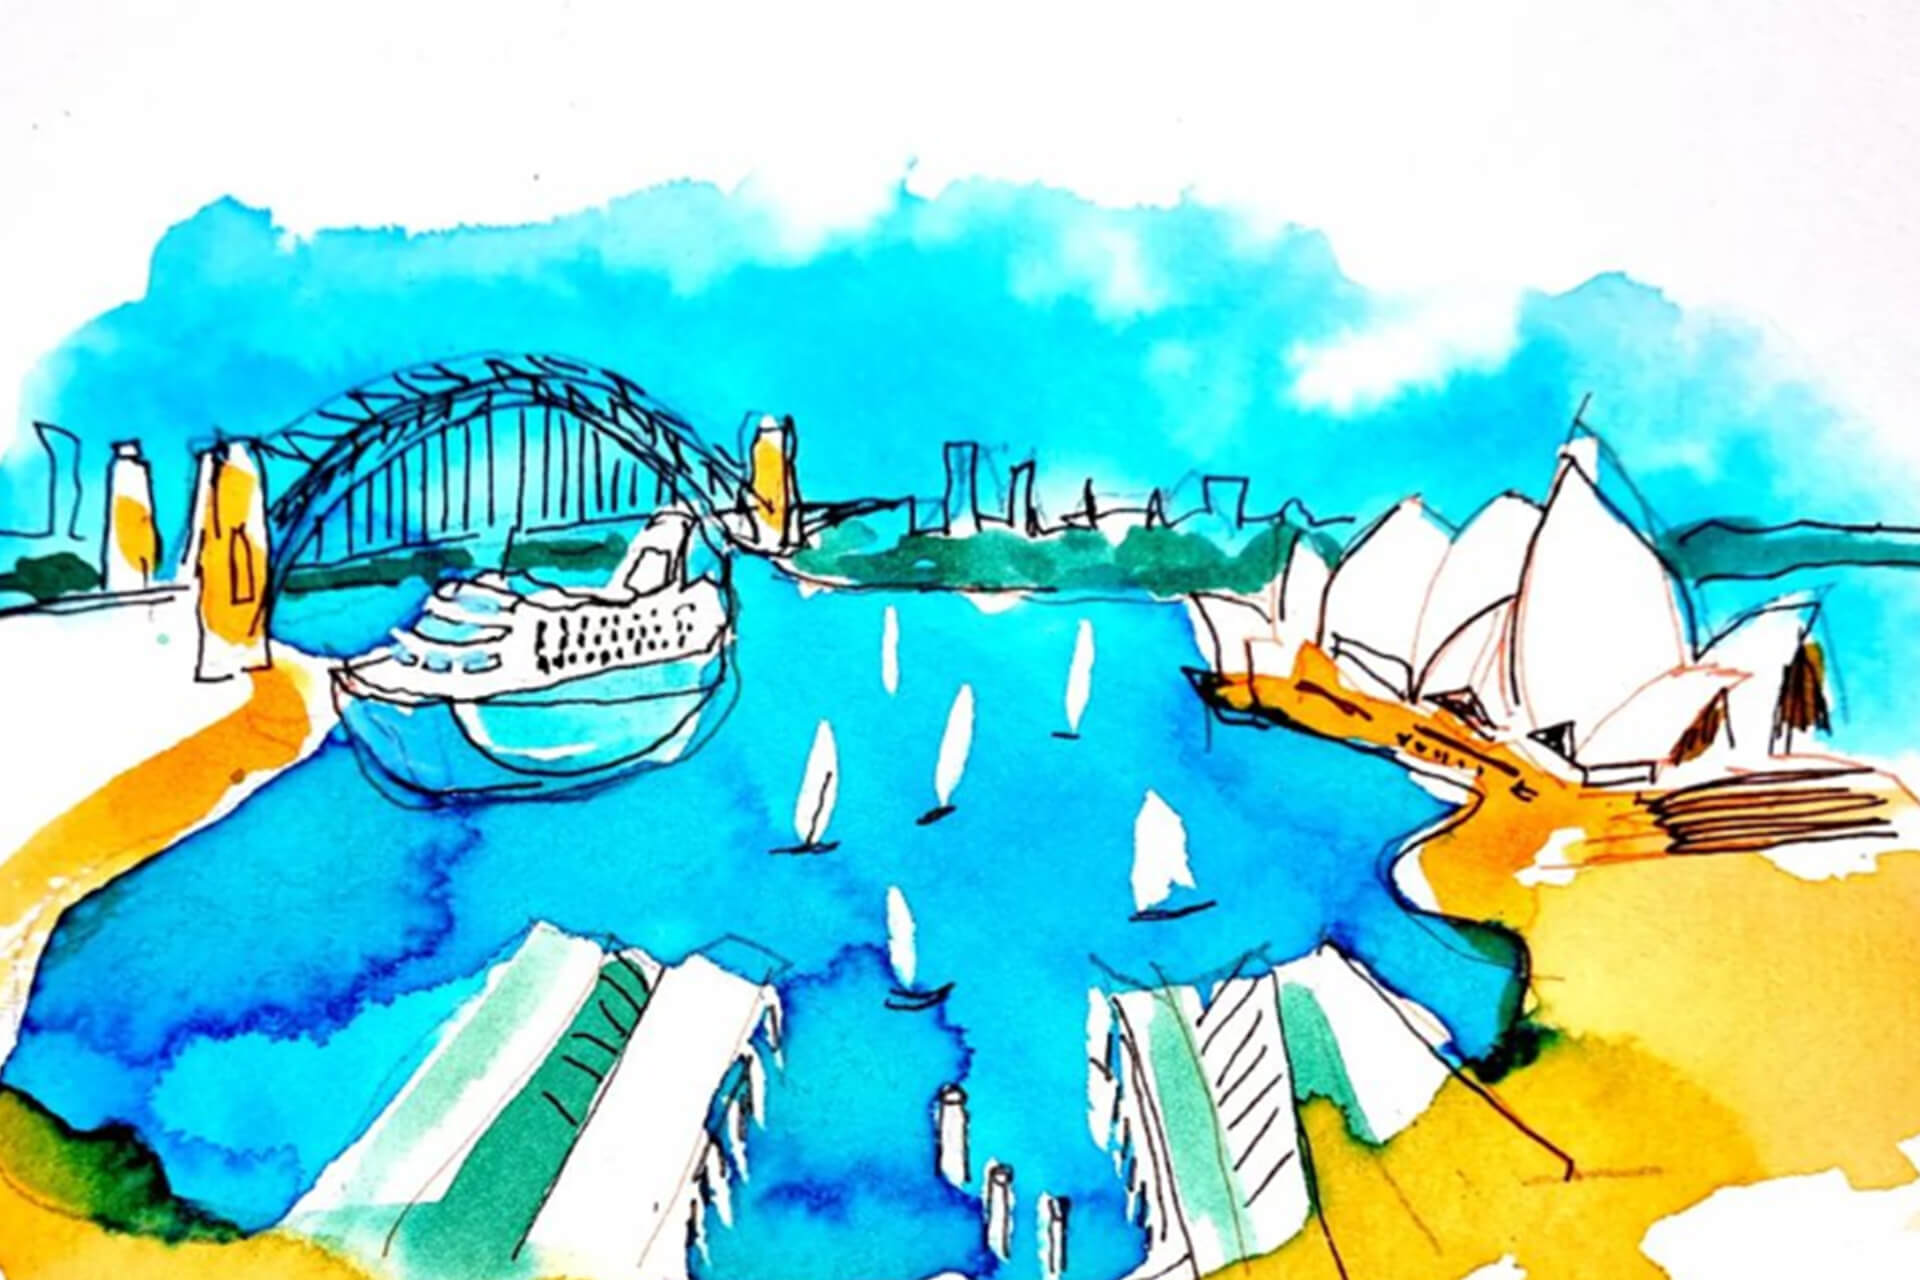 Sydney Harbor Bridge Drawings for Sale - Pixels